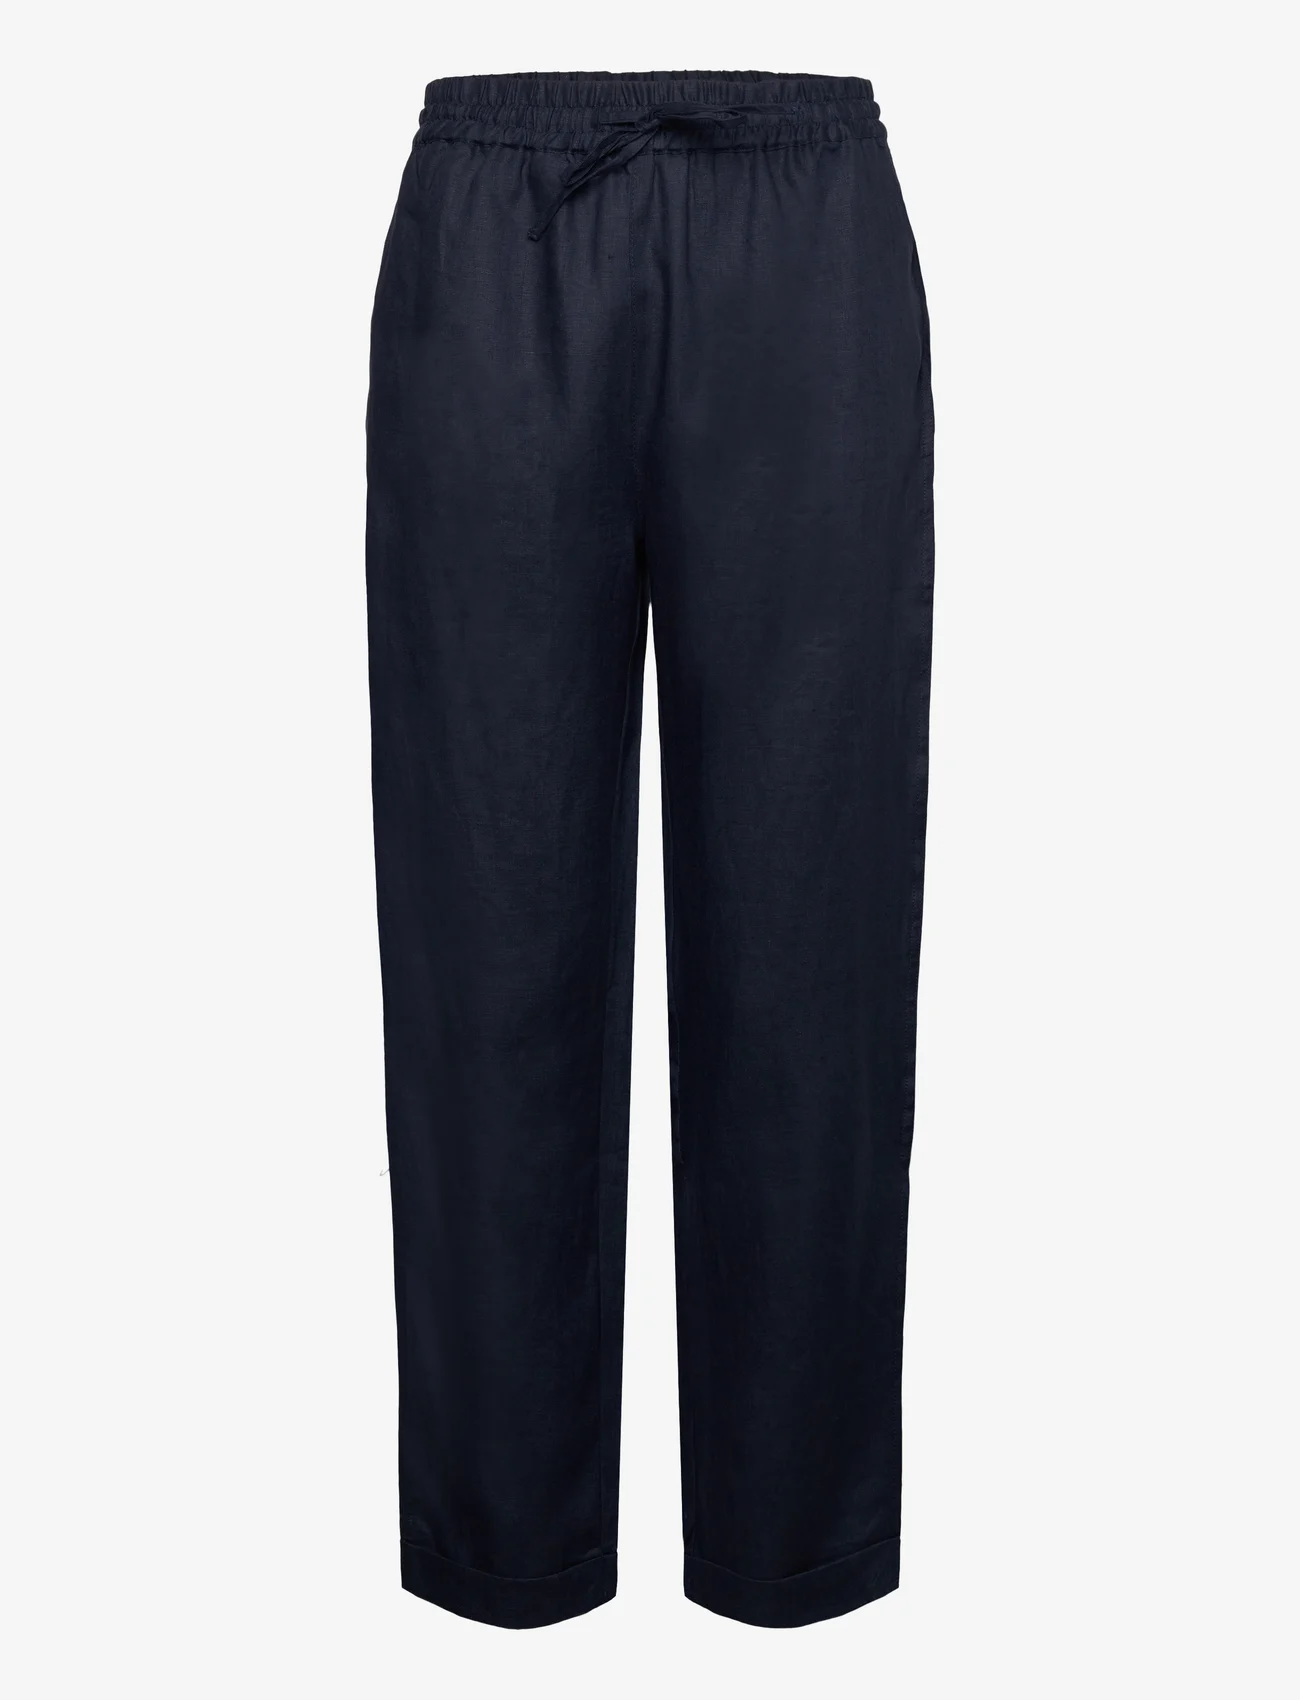 Rosemunde - Linen trousers - linased püksid - navy - 0